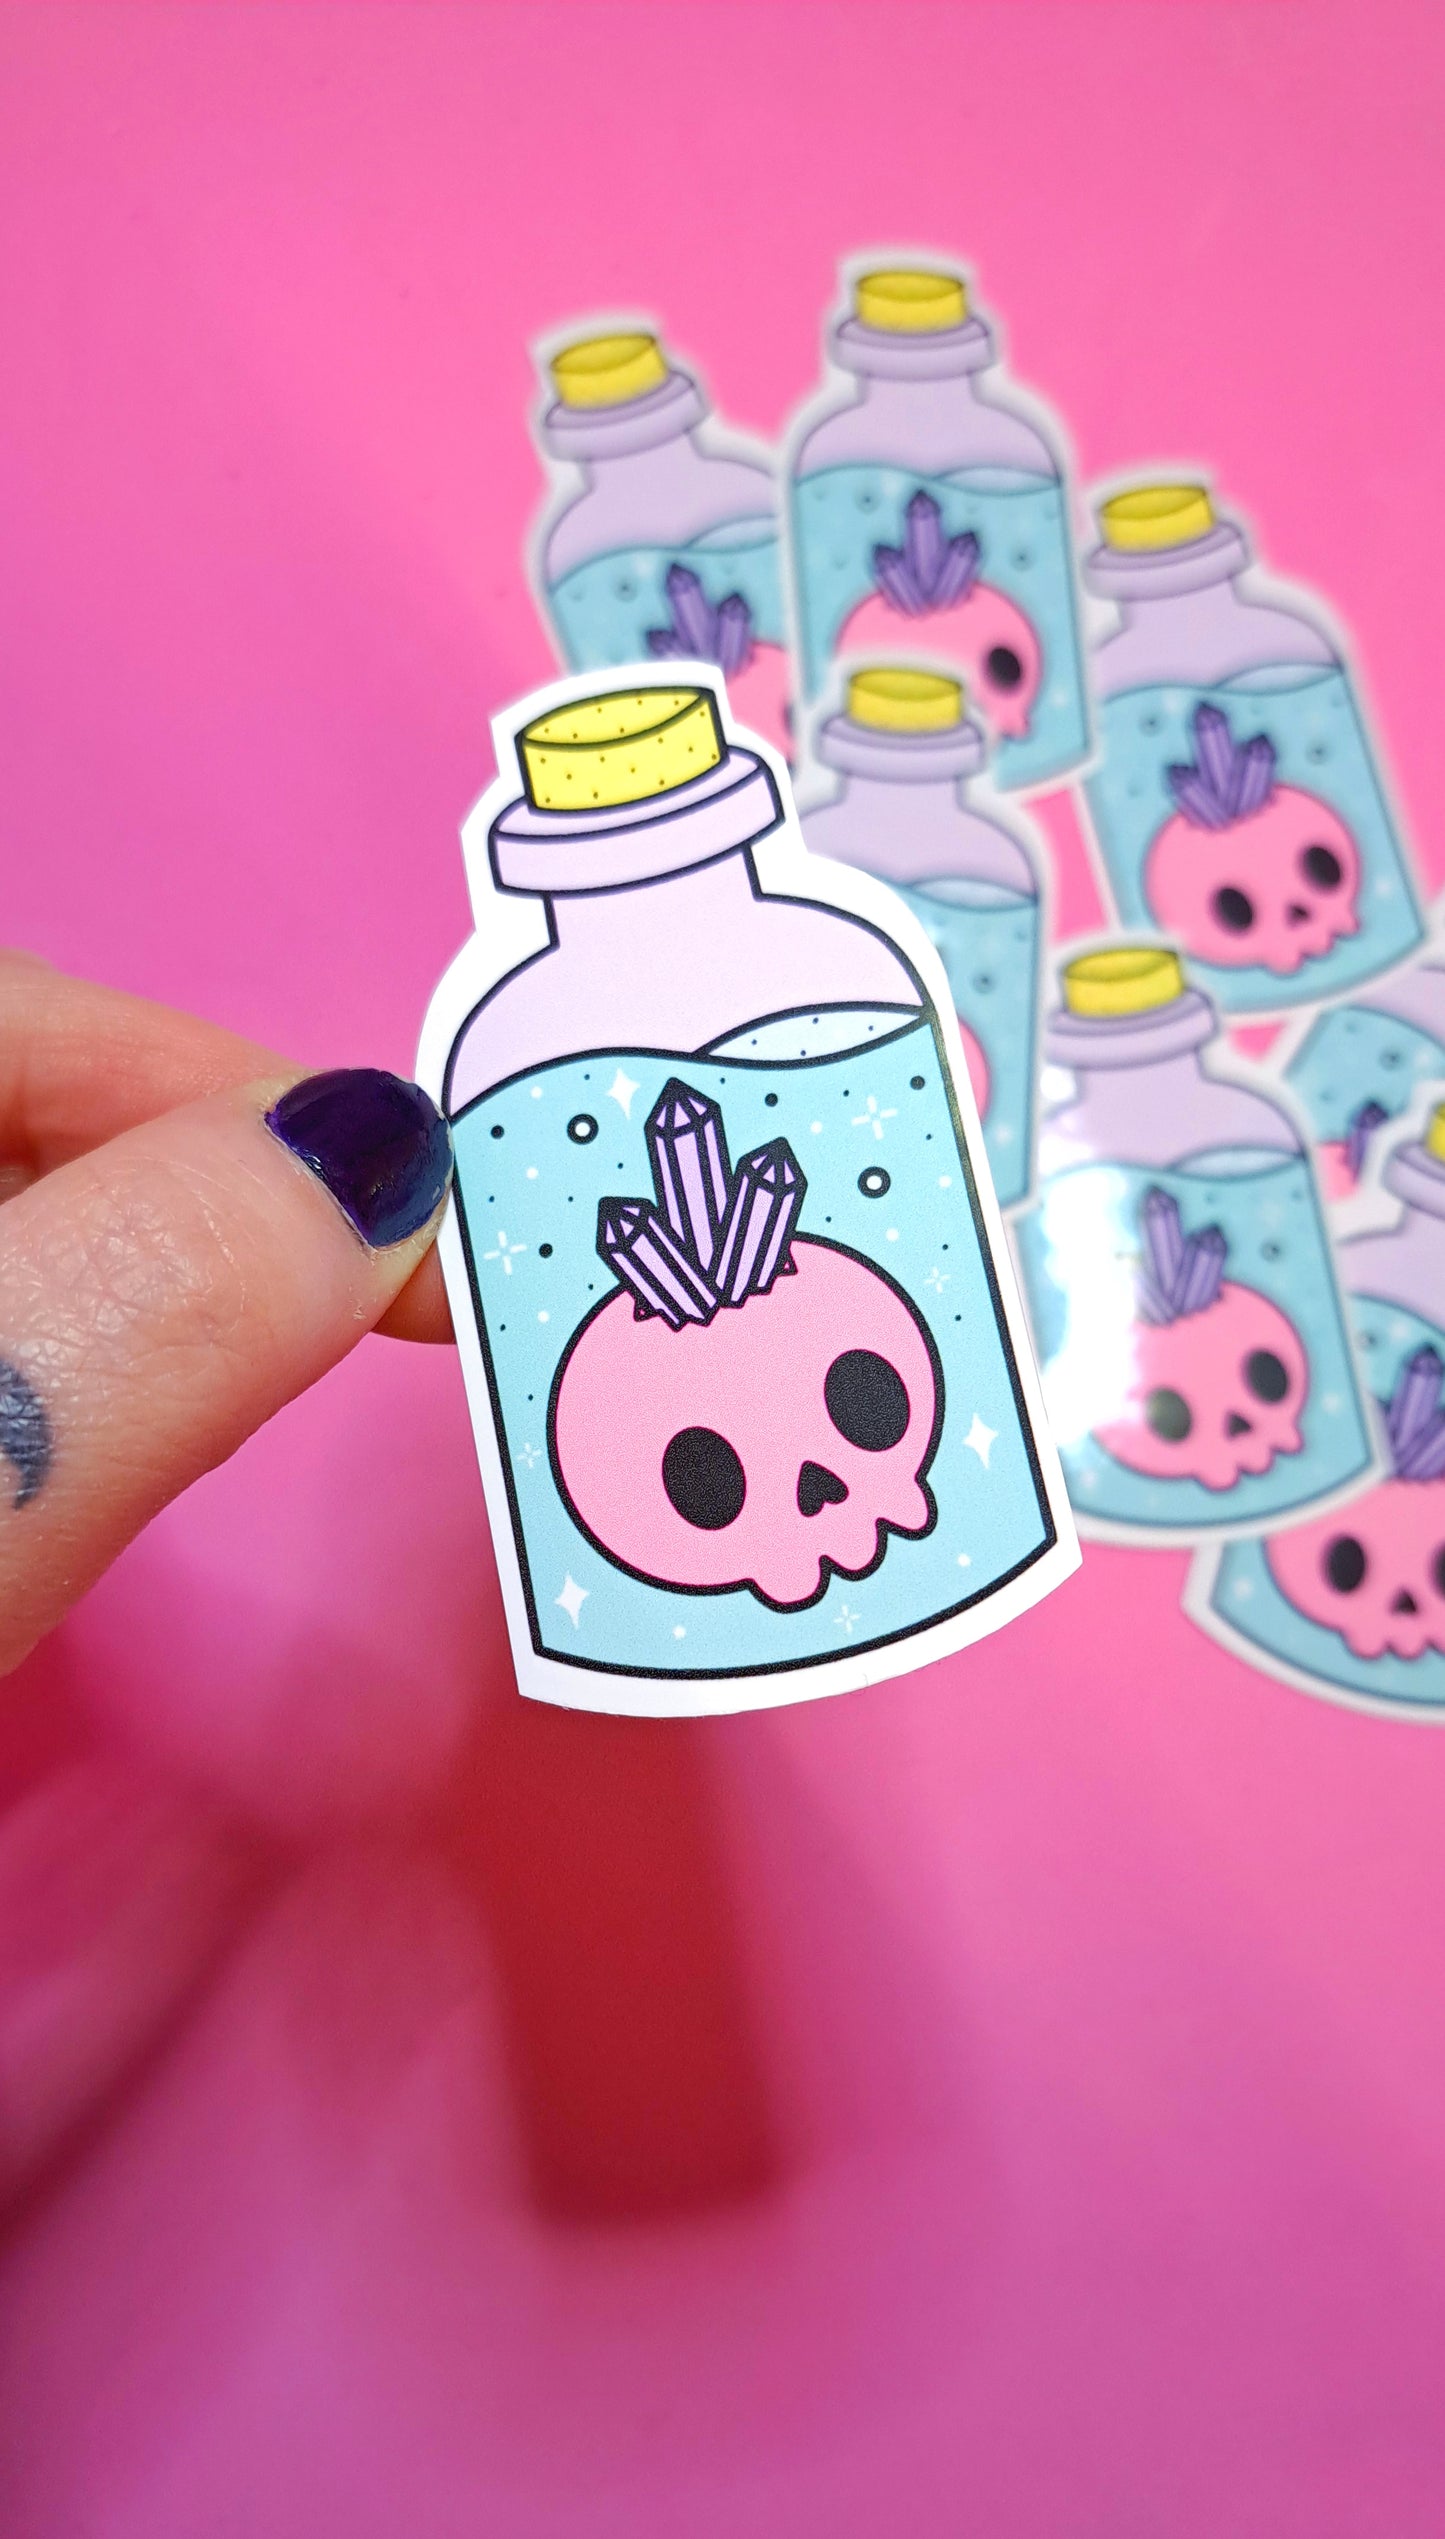 Skull in a Bottle Sticker